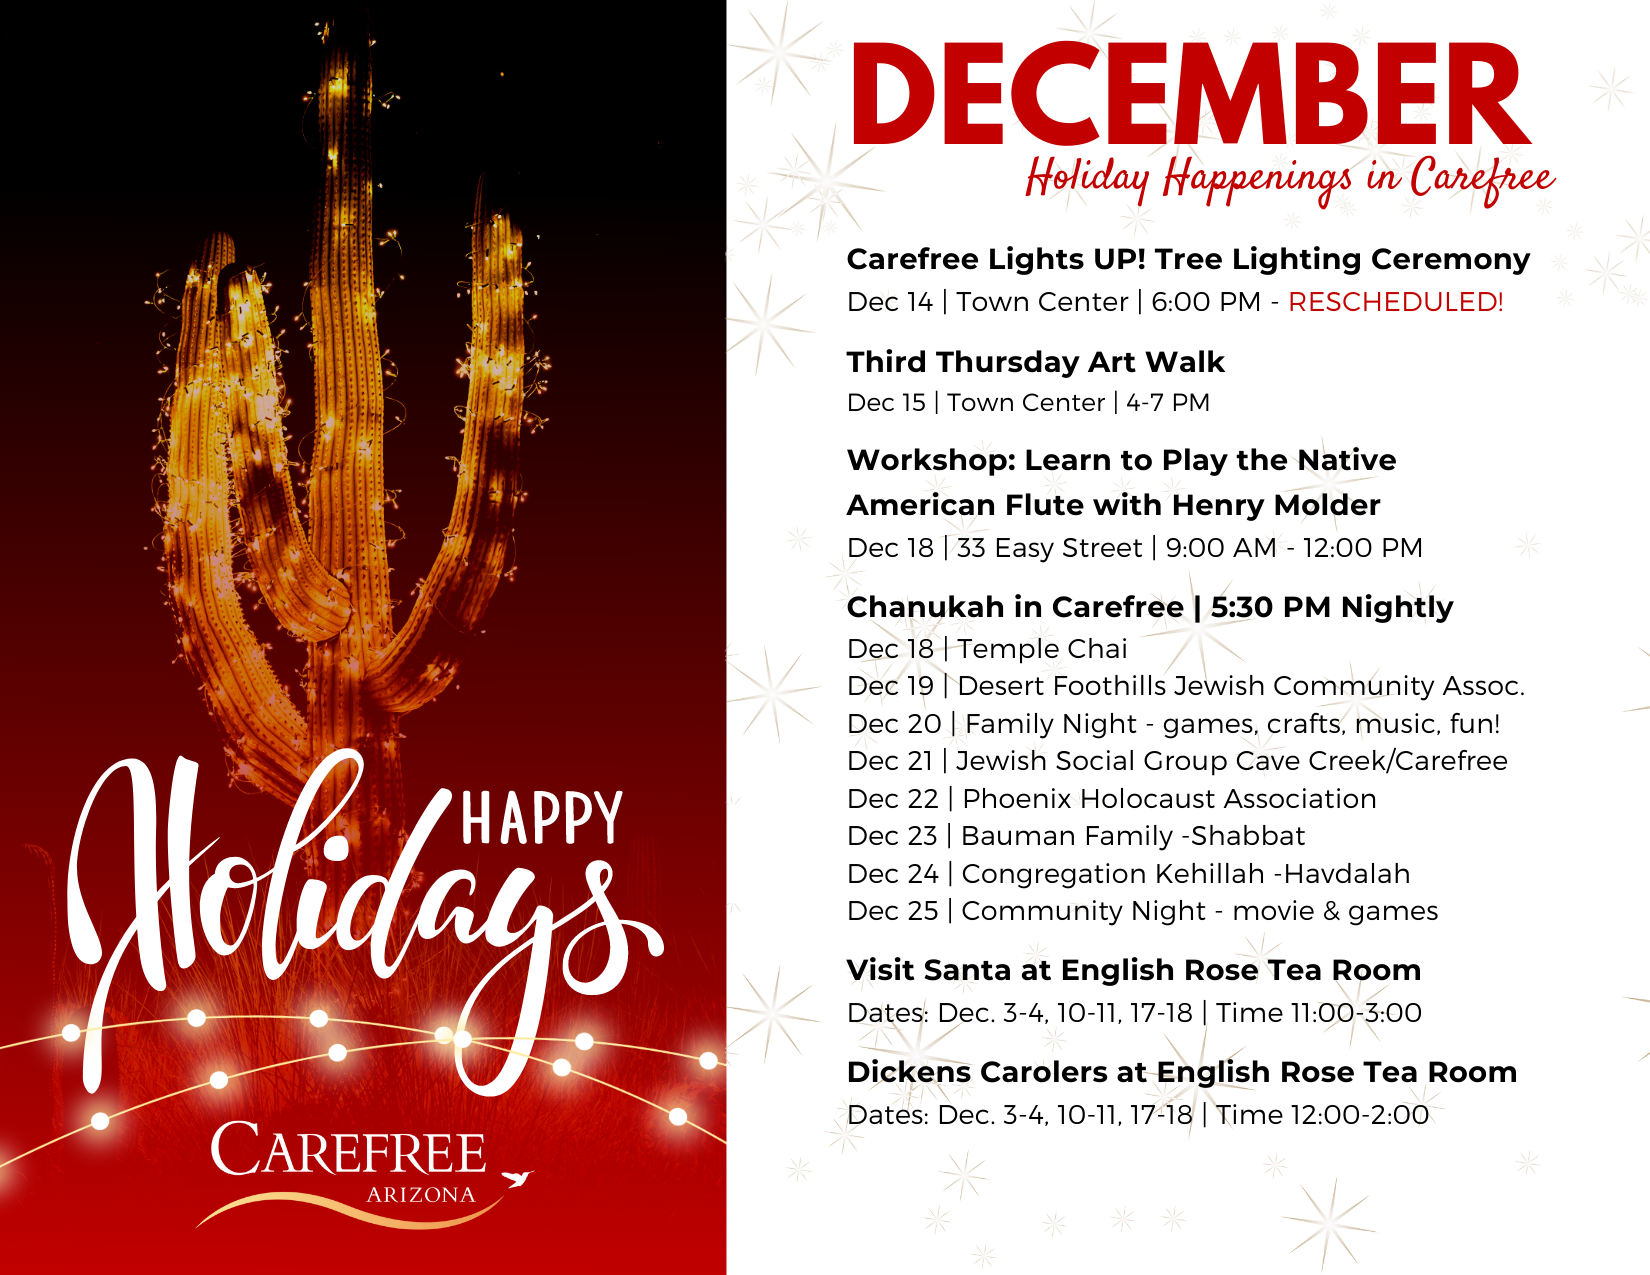 December schedule of events